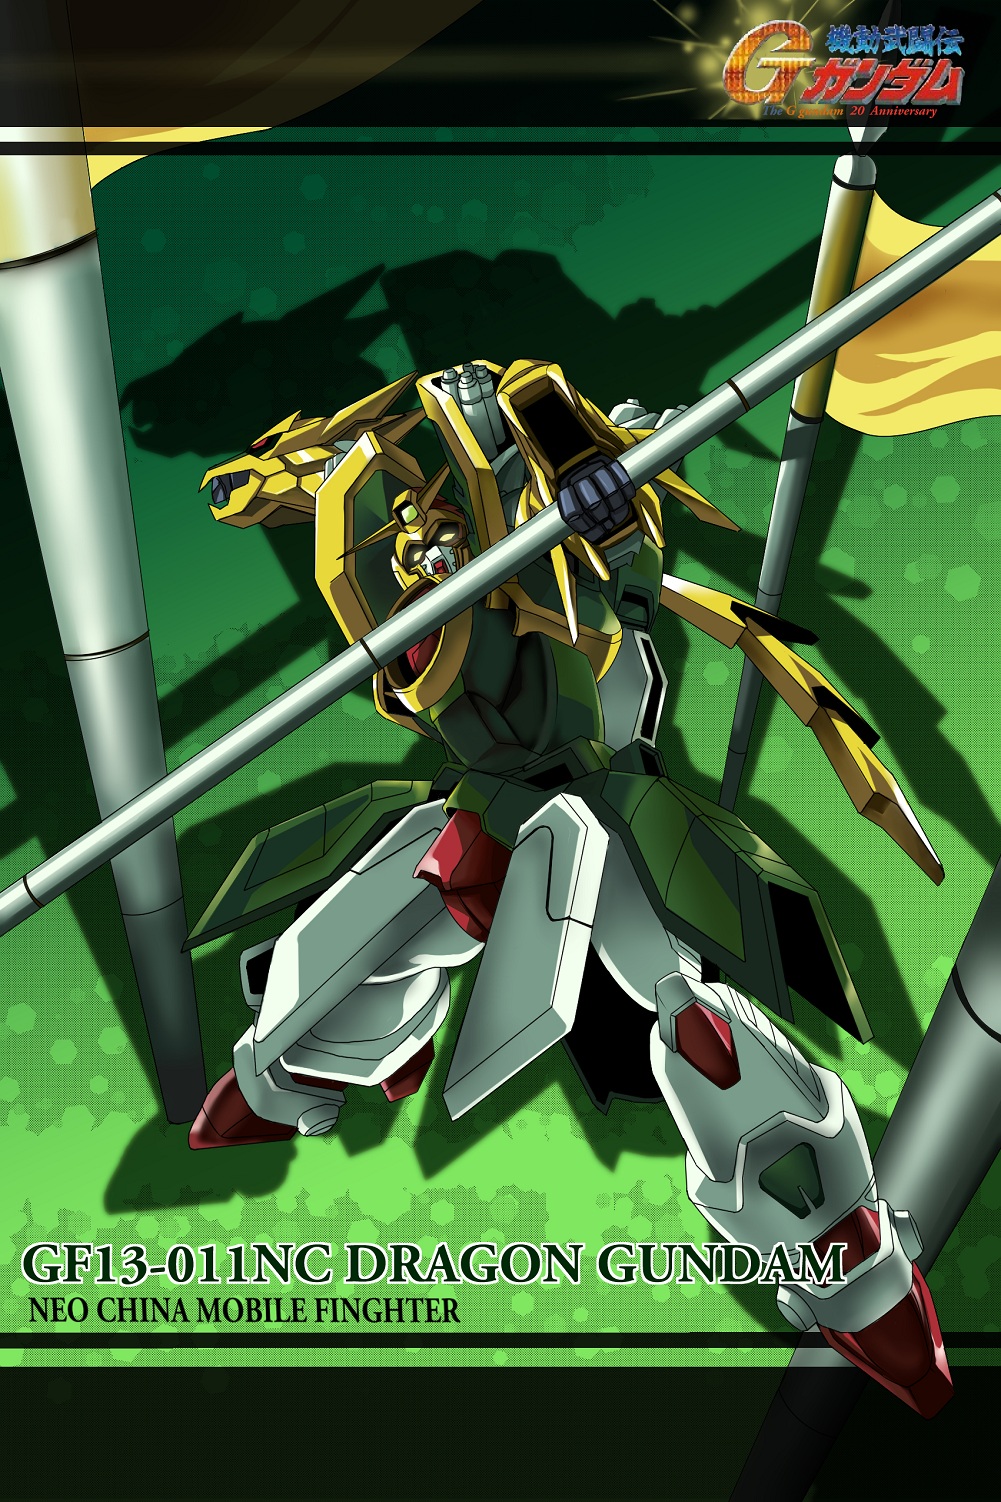 Anime Mechs Super Robot Taisen Gundam Mobile Fighter G Gundam Artwork Digital Art Fan Art Dragon Gun 1001x1502